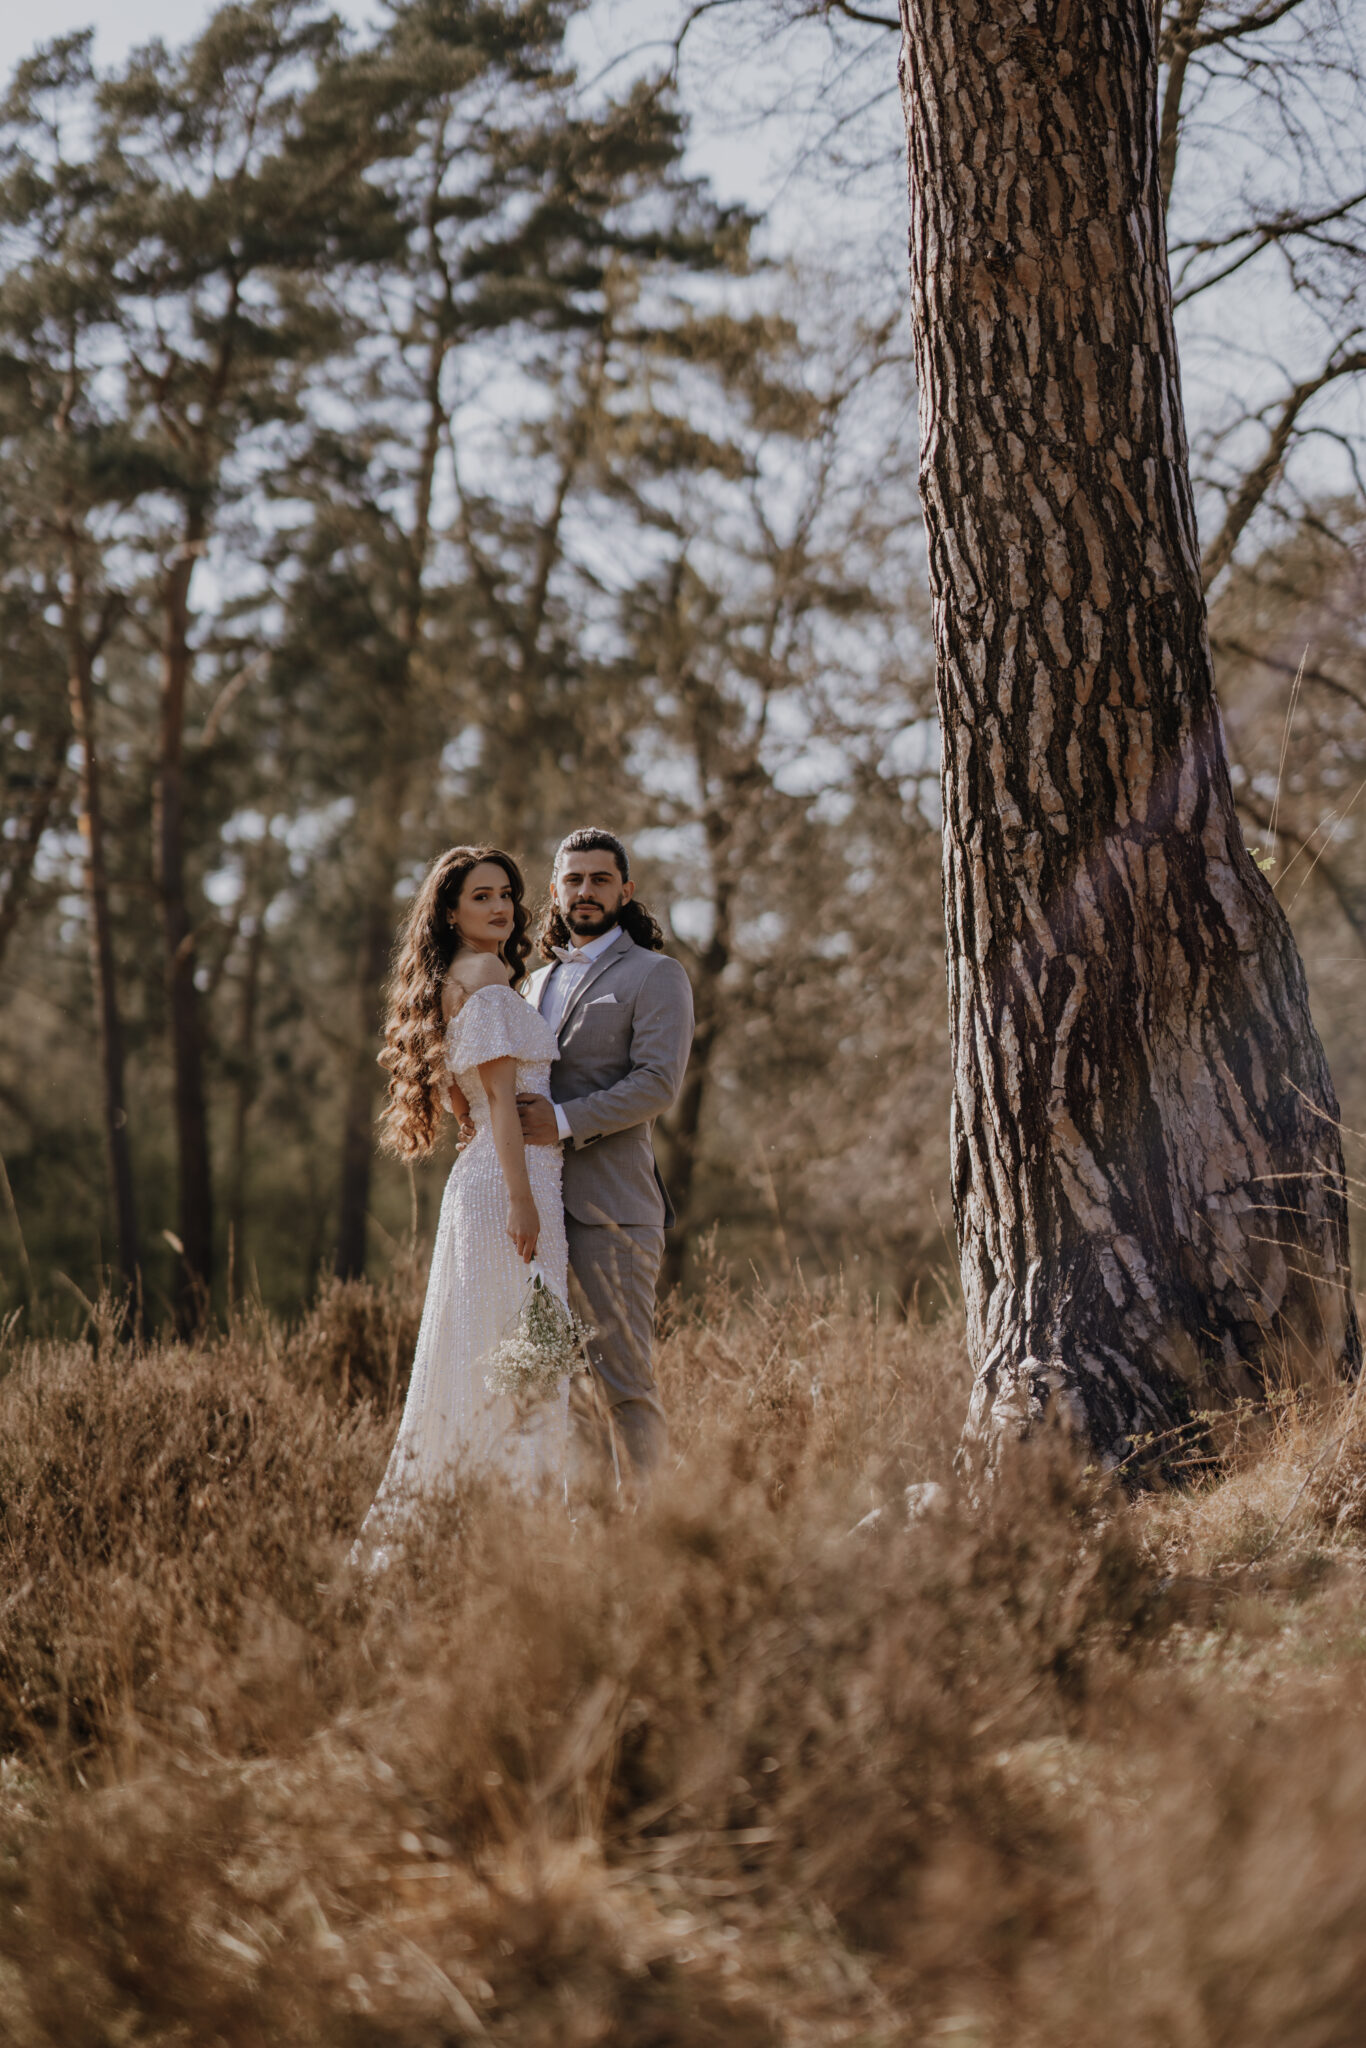 Das Brautpaar steht neben einem grToßen Kieferbaum, beide gucken in die Kamera und der Bräutigam hält die Braut an ihrer Taille